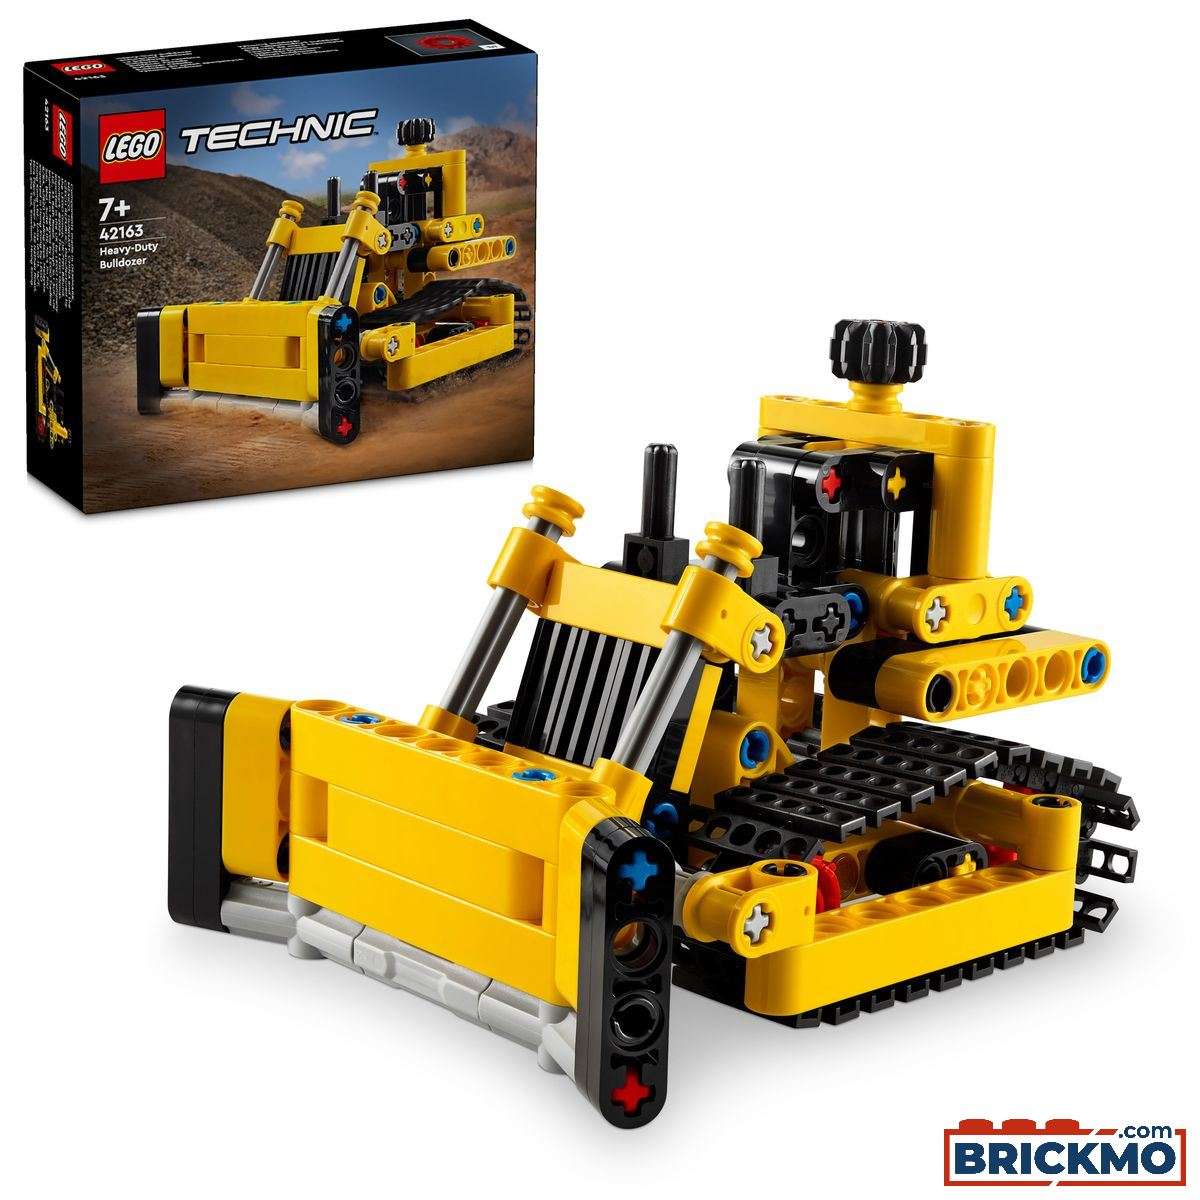 LEGO Technic 42163 Stor bulldozer 42163